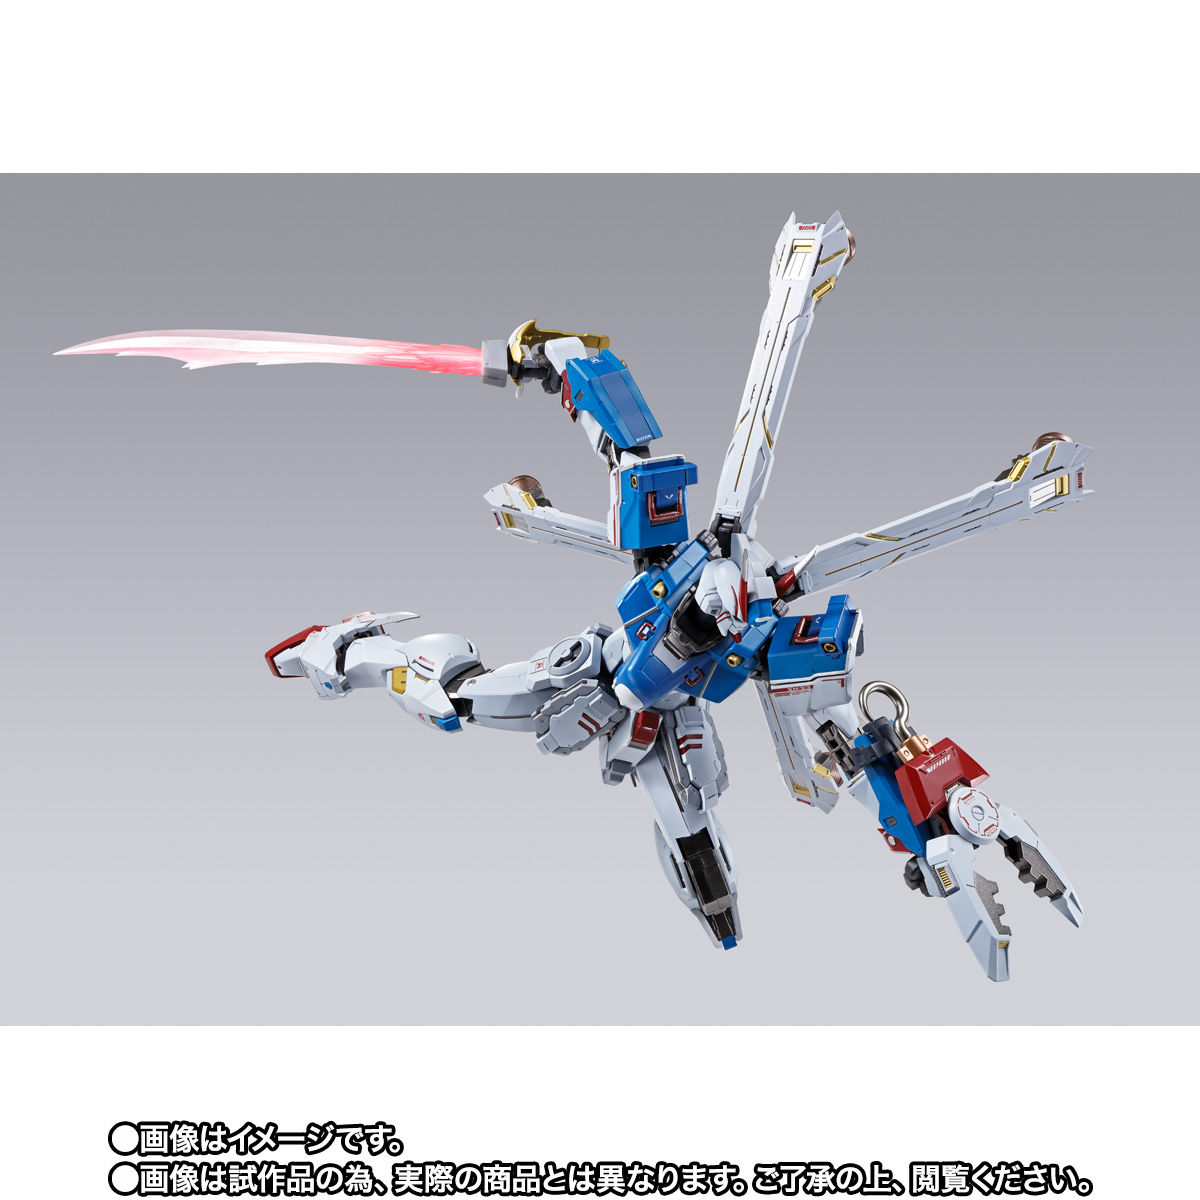 【限定販売】METAL BUILD『クロスボーン・ガンダムX3』機動戦士クロスボーン・ガンダム 可動フィギュア-004